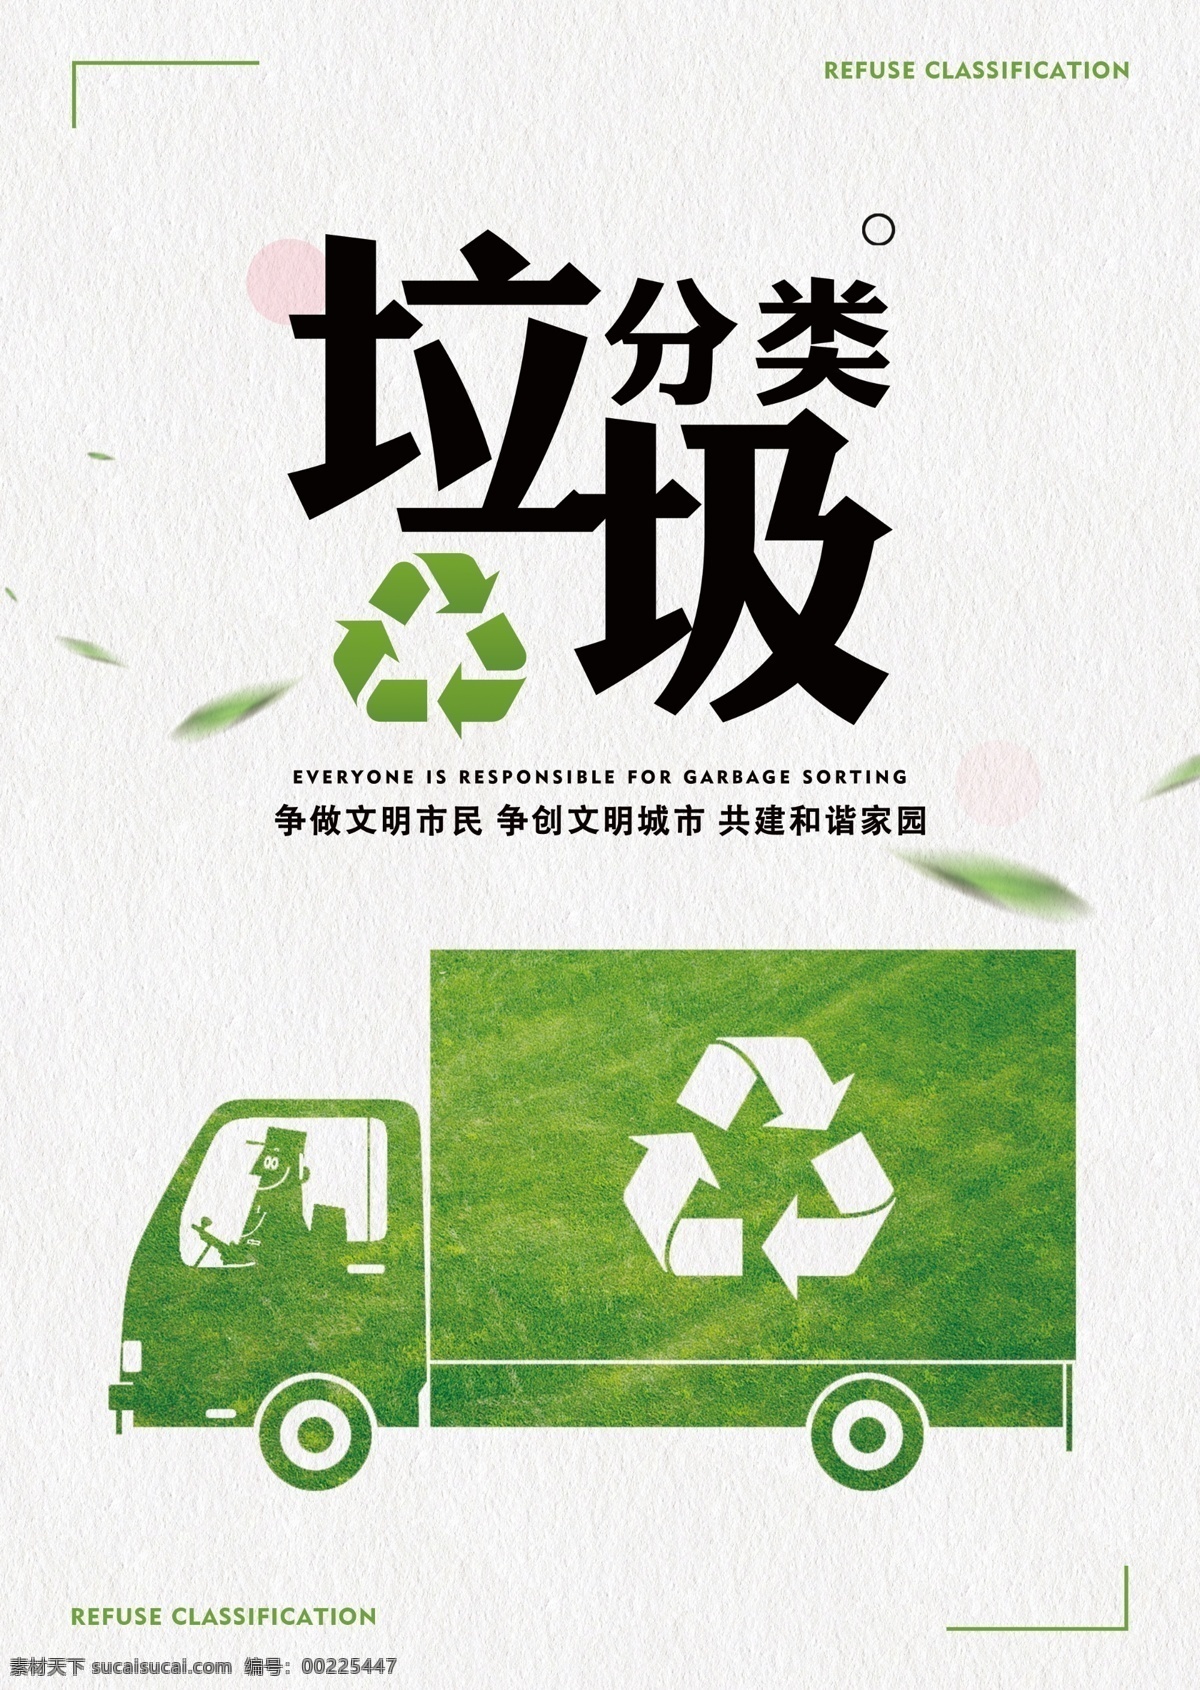 垃圾 分类 主题 公益 宣传海报 垃圾分类 绿色 环保 宣传 专辑海报 分层